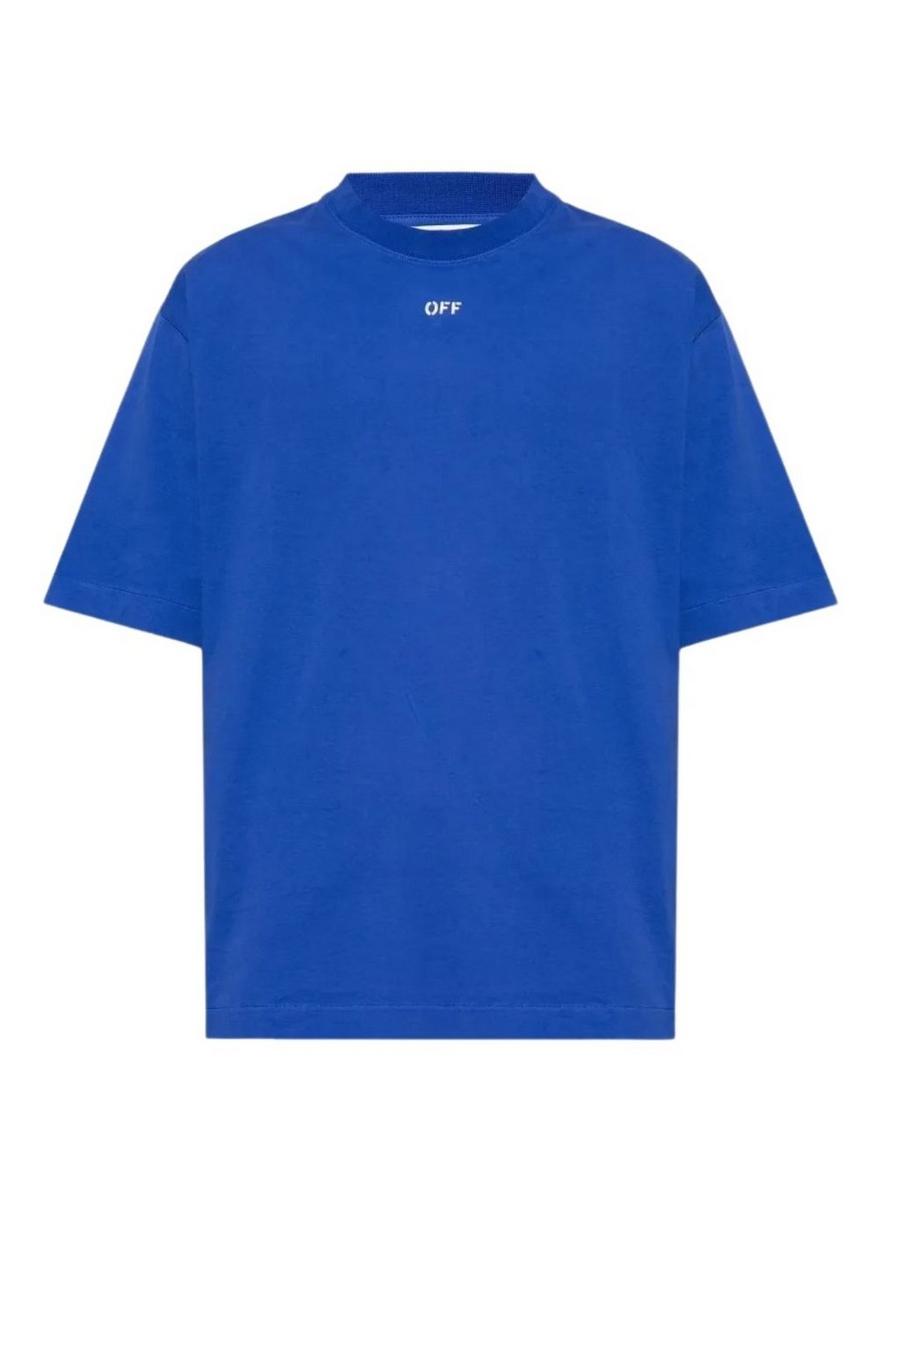 OFF Stamp Logo Skate Fit Dark Blue T-Shirt